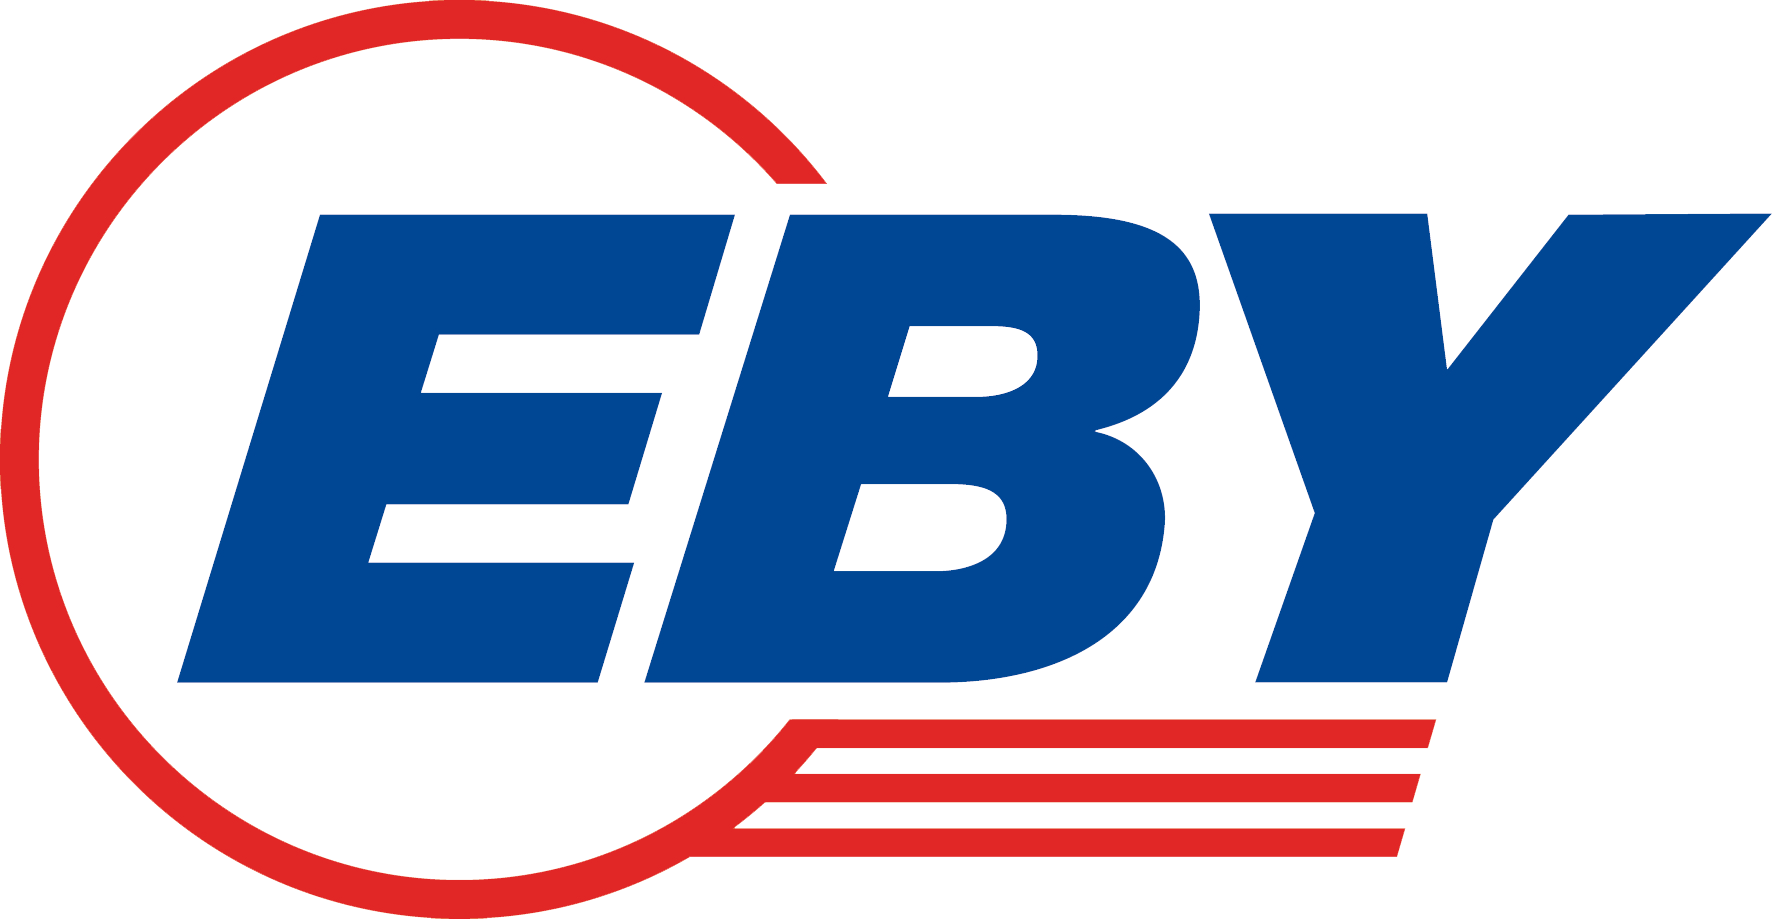 Eby-logo-flat-CMYK